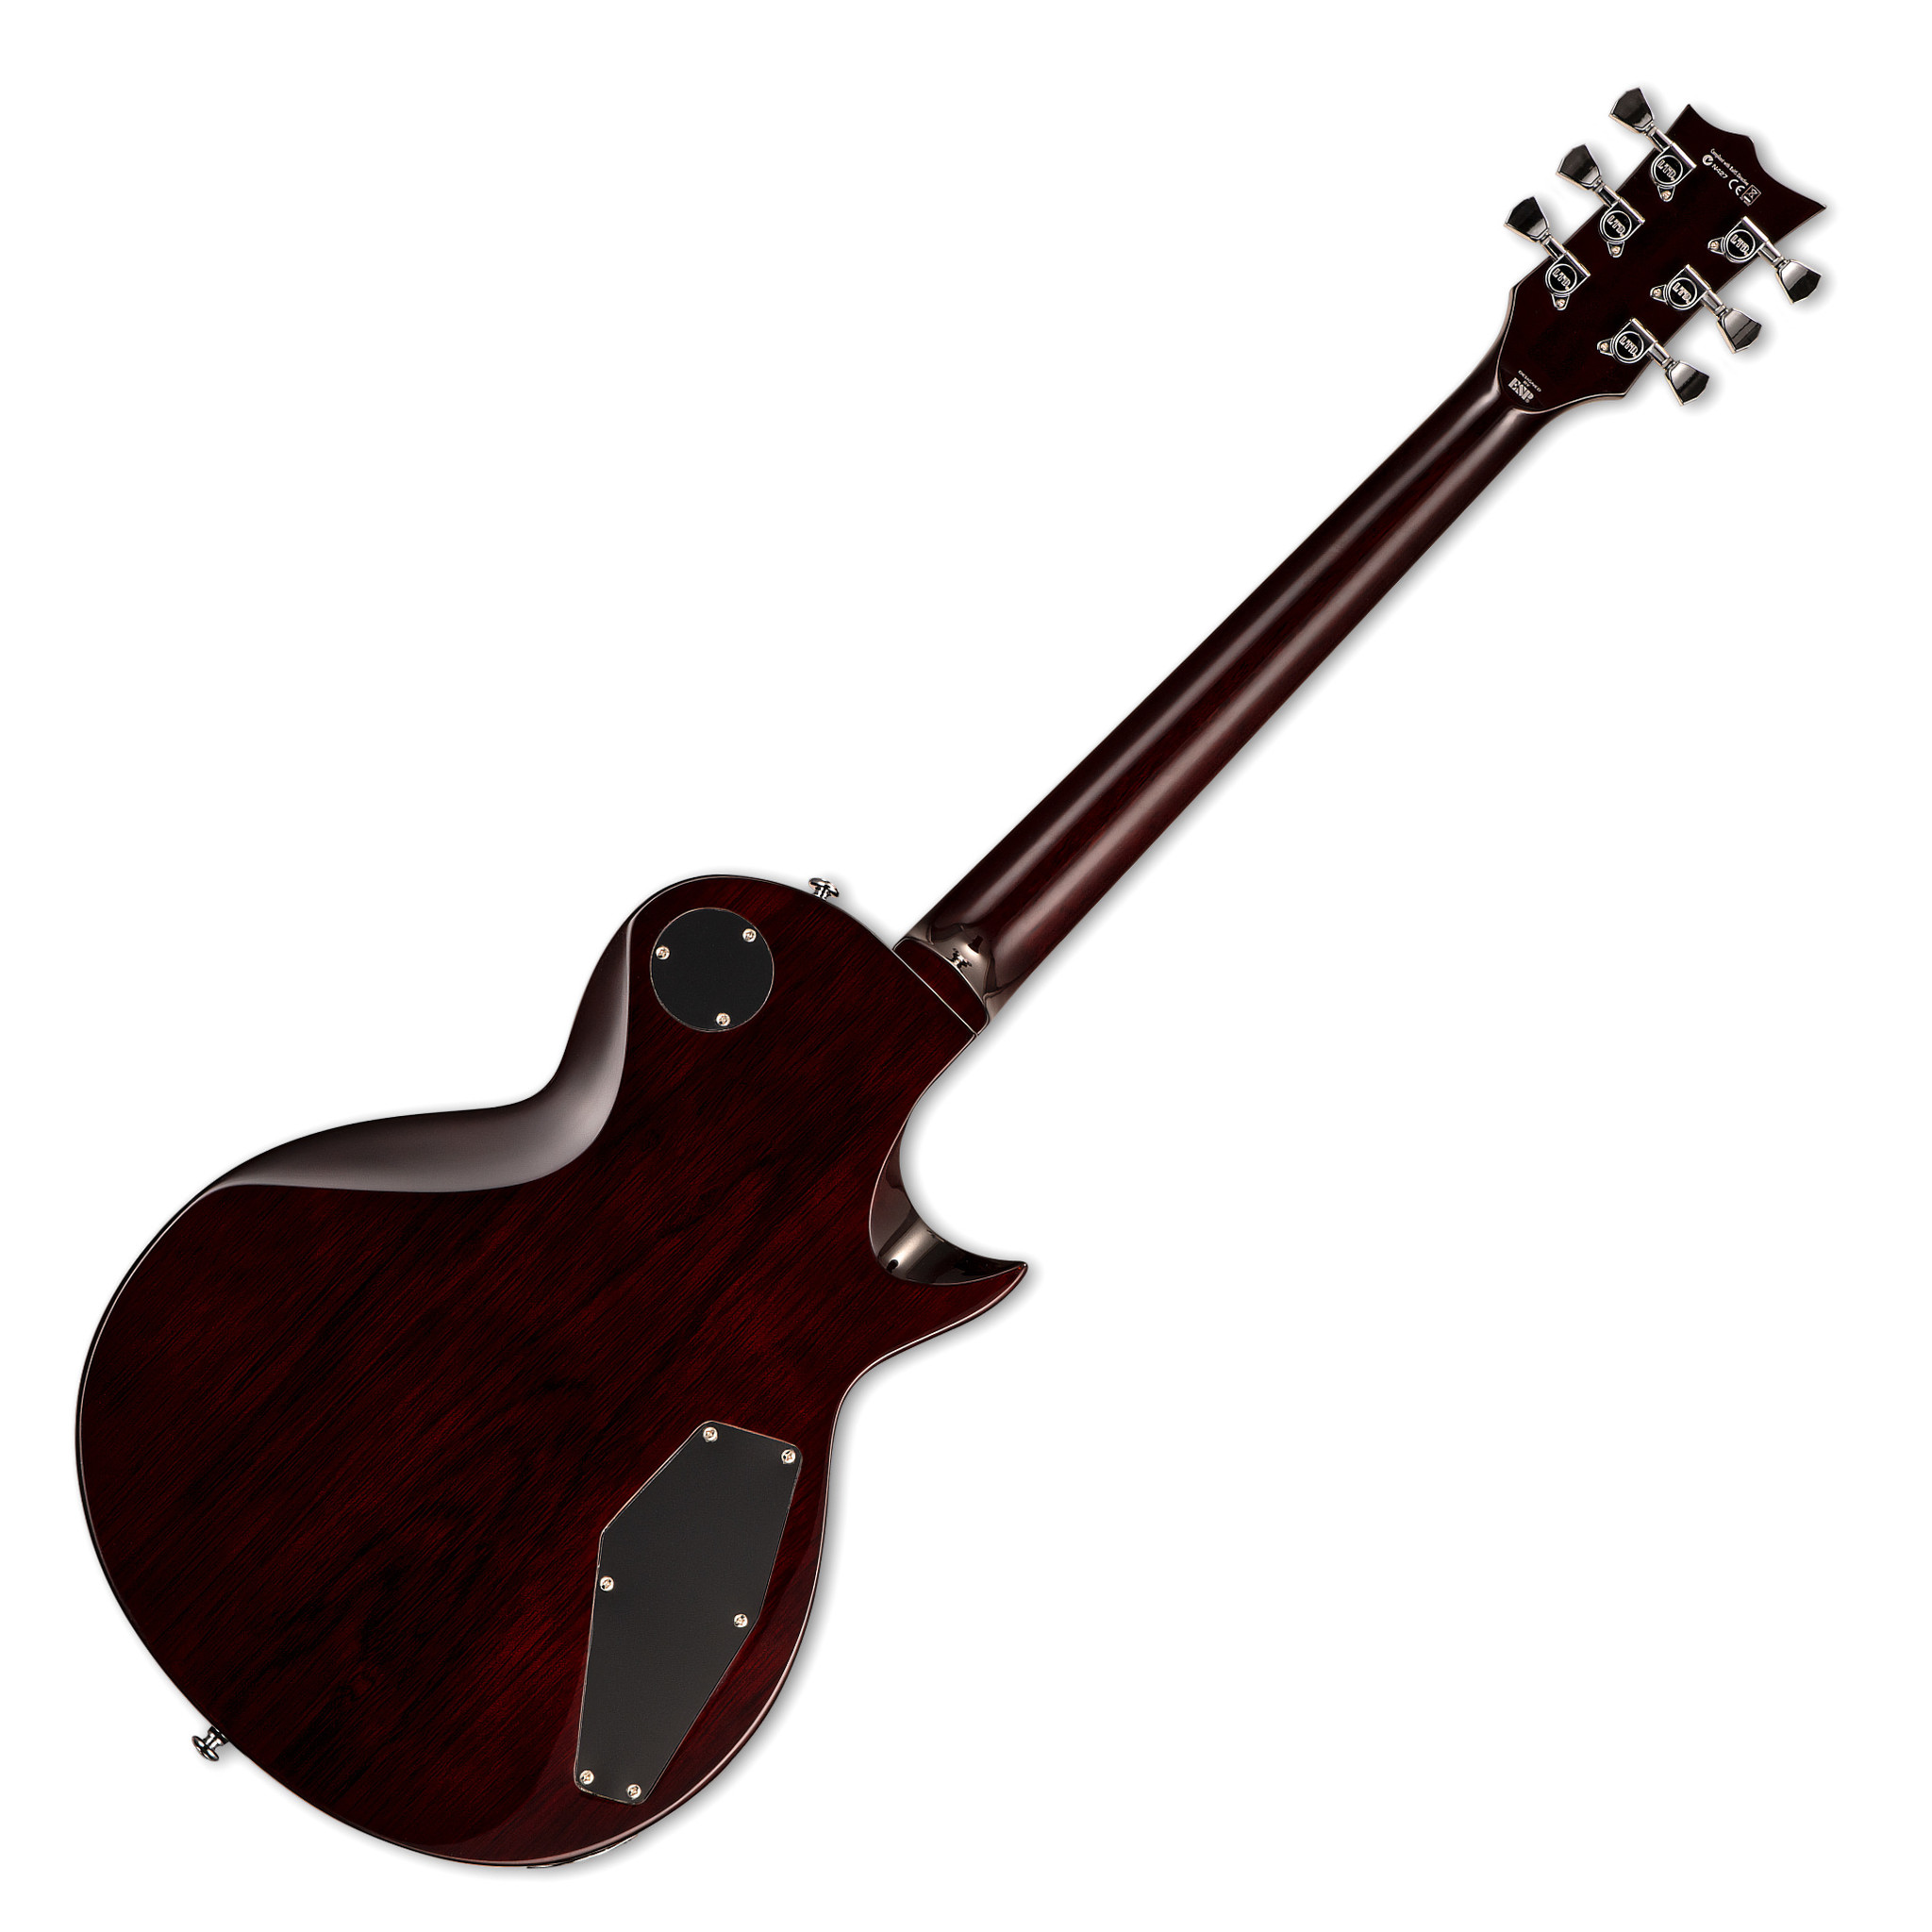 LTD (ESP) EC-256FM Singlecut Guitar, Vintage Natural Flamed Maple Top, Lefthanded (Lefty)